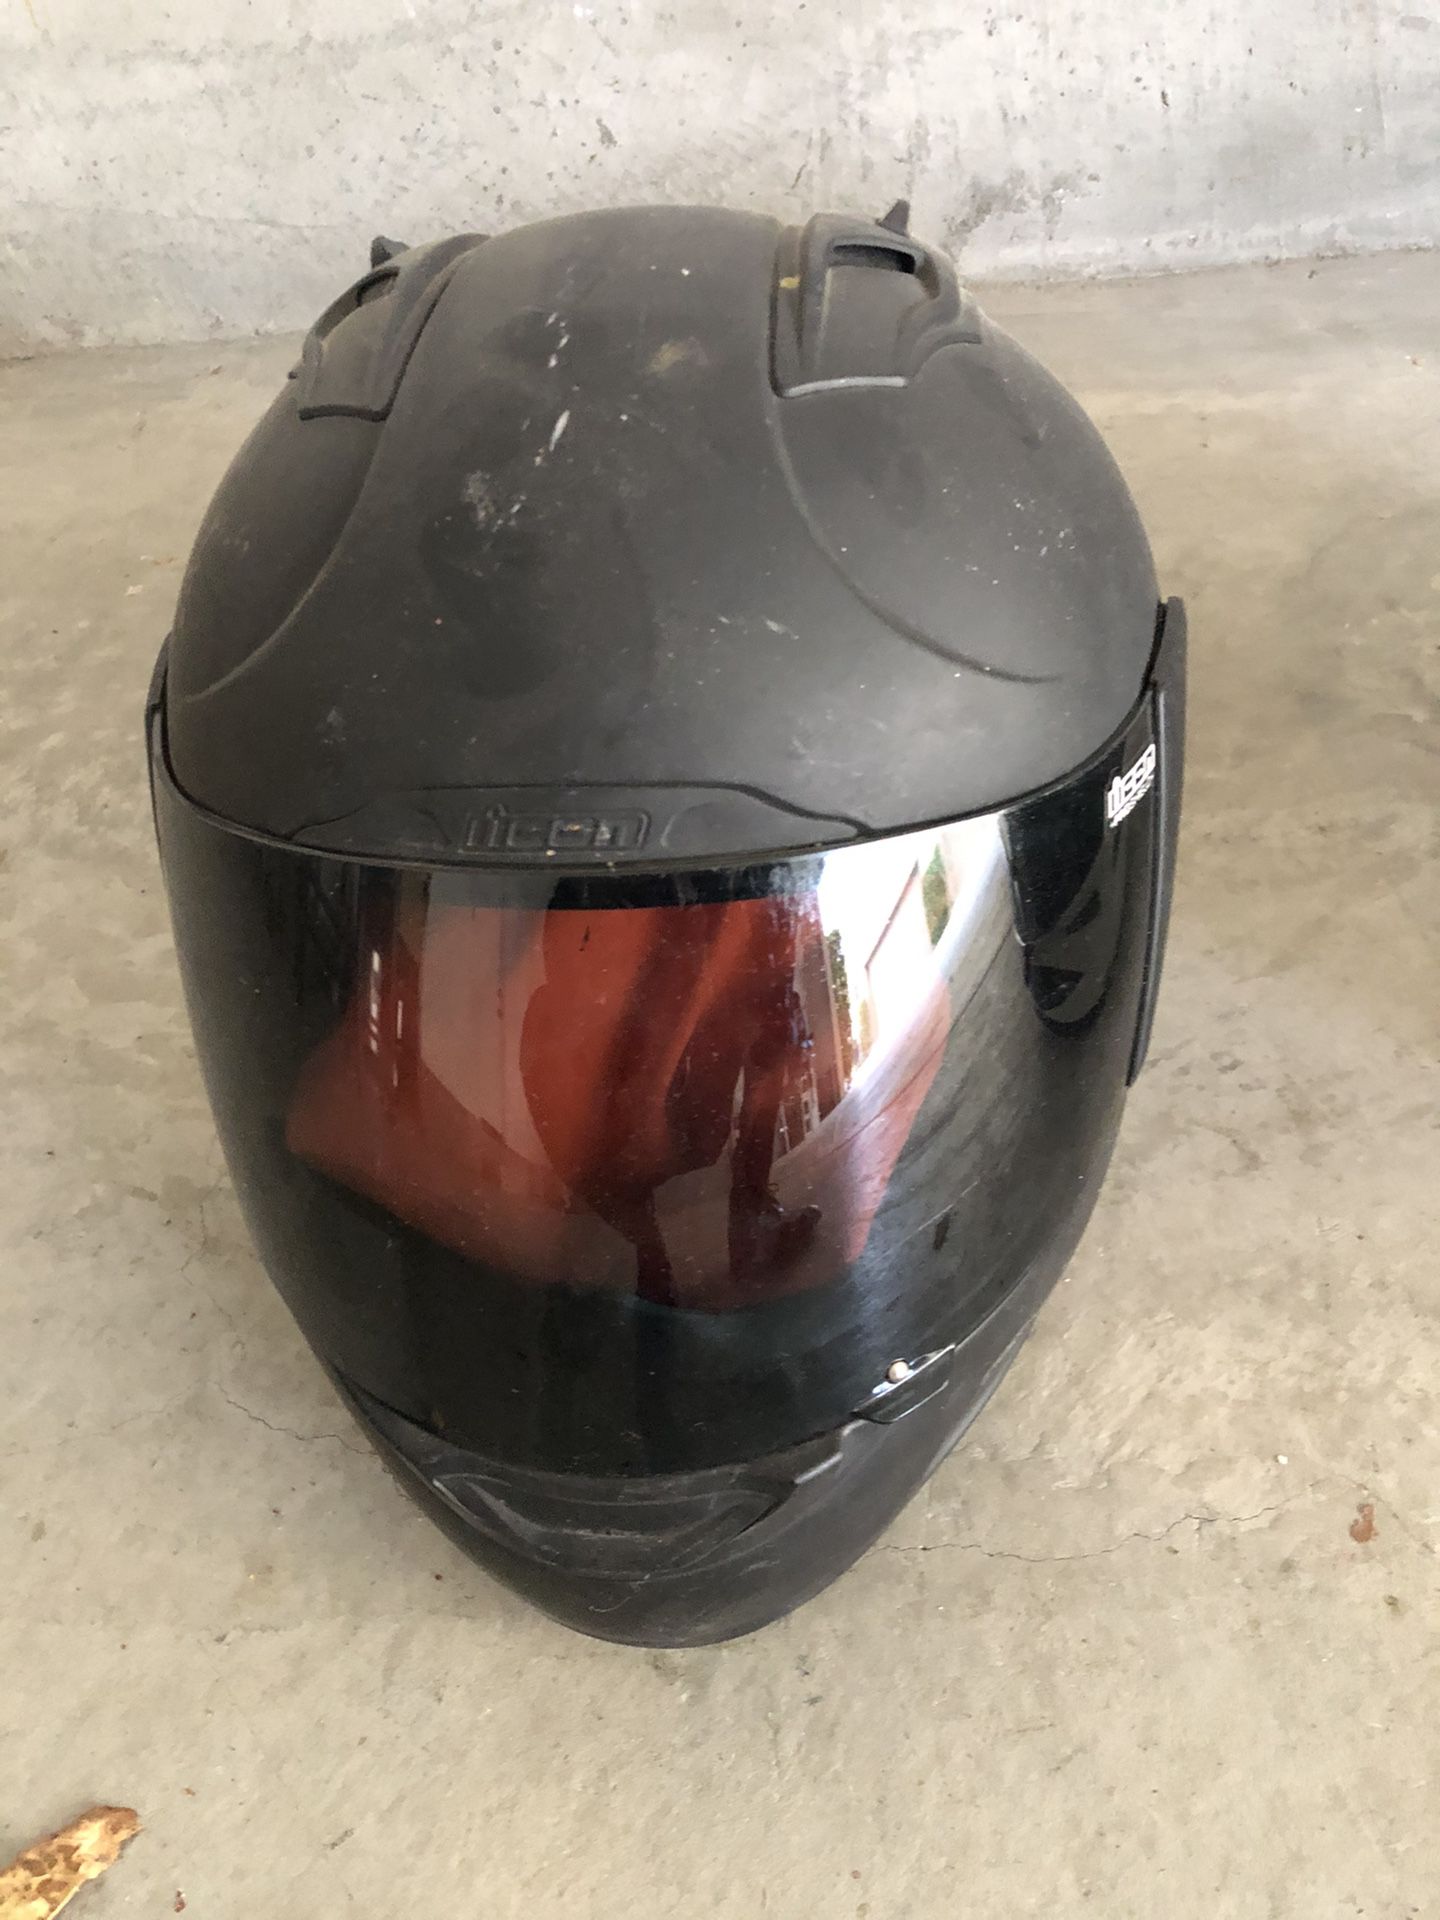 Used motorcycle helmet